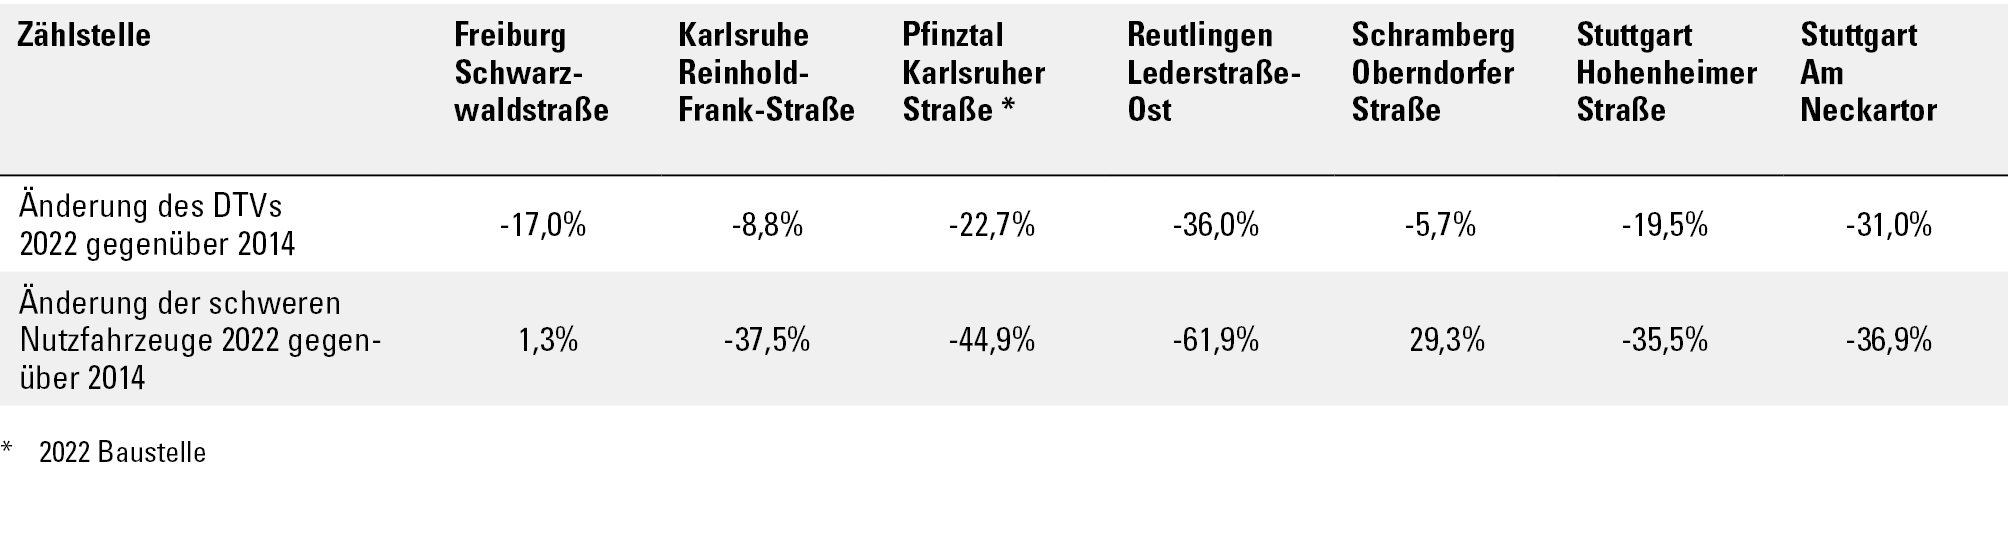 Tabellarische Darstellung der prozentualen Veränderungen der Verkehrsstärken (DTV gleich durchschnittlicher täglicher Verkehr) und der schweren Nutzfahrzeuge 2022 gegenüber 2014 an den Verkehrszählstellen. Die Änderungen des DTVs 2022 gegenüber 2014 liegen zwischen -36,0 Prozent (Reutlingen Lederstraße-Ost) bis -5,7 Prozent (Schramberg Oberndorfer Straße). Die Änderungen der schweren Nutzfahrzeuge 2022 gegenüber 2014 zeigen eine Spannweite von –61,9 Prozent (Reutlingen Lederstraße-Ost) bis +29,3 Prozent (Schramberg Oberndorfer Straße).